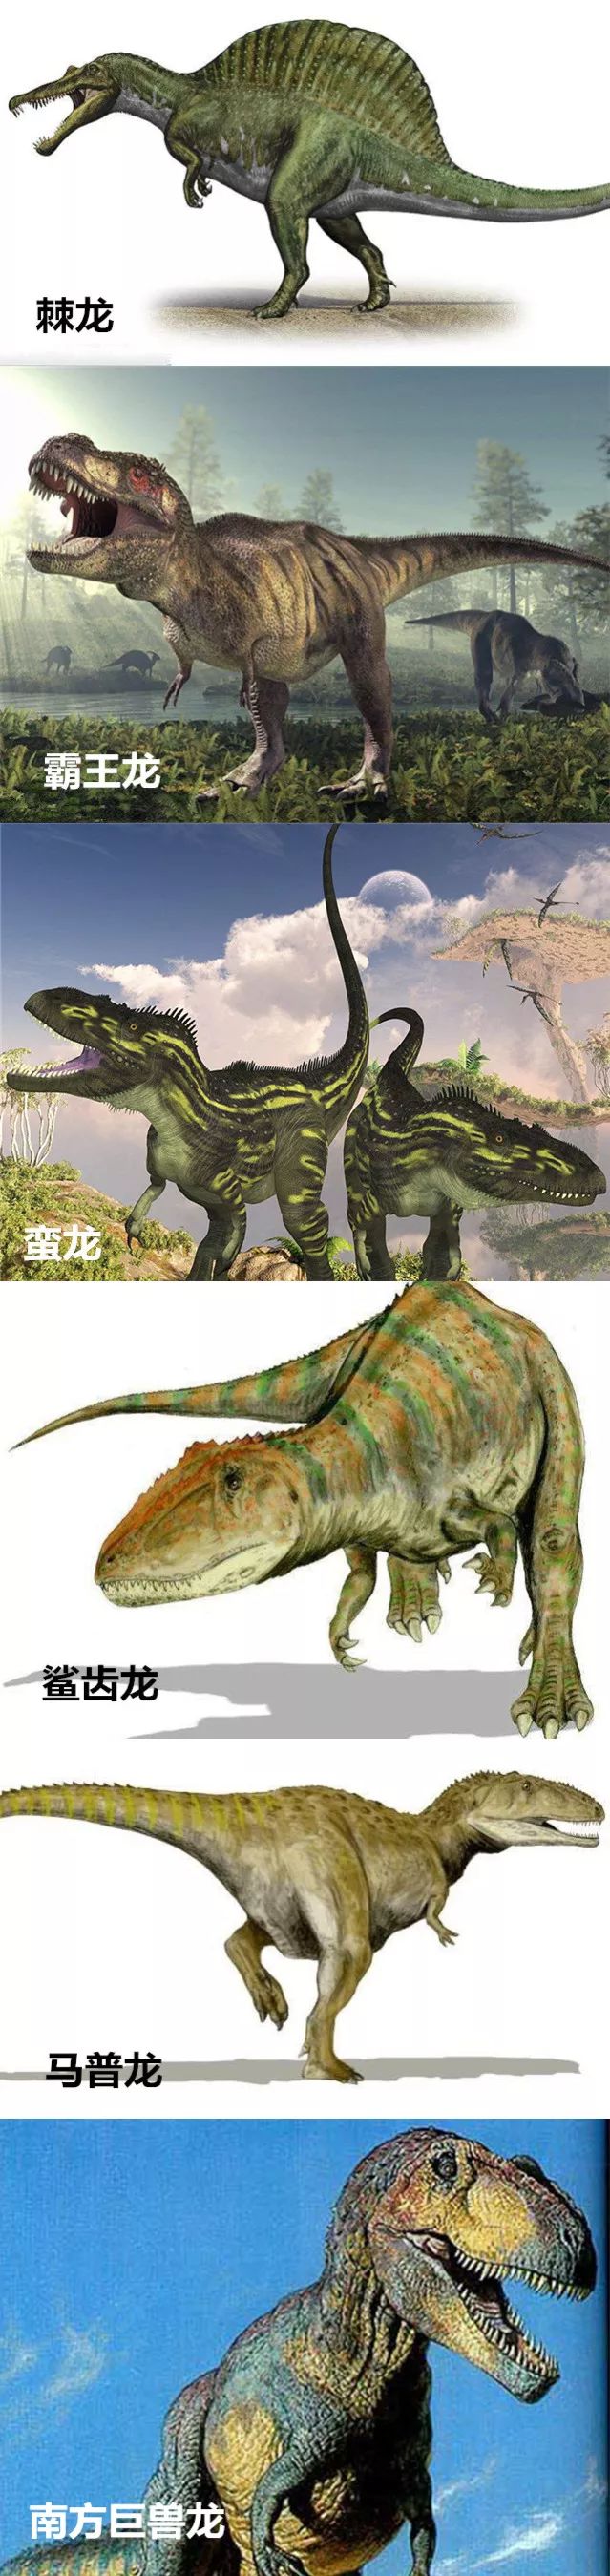 最厉害的恐龙有哪些?